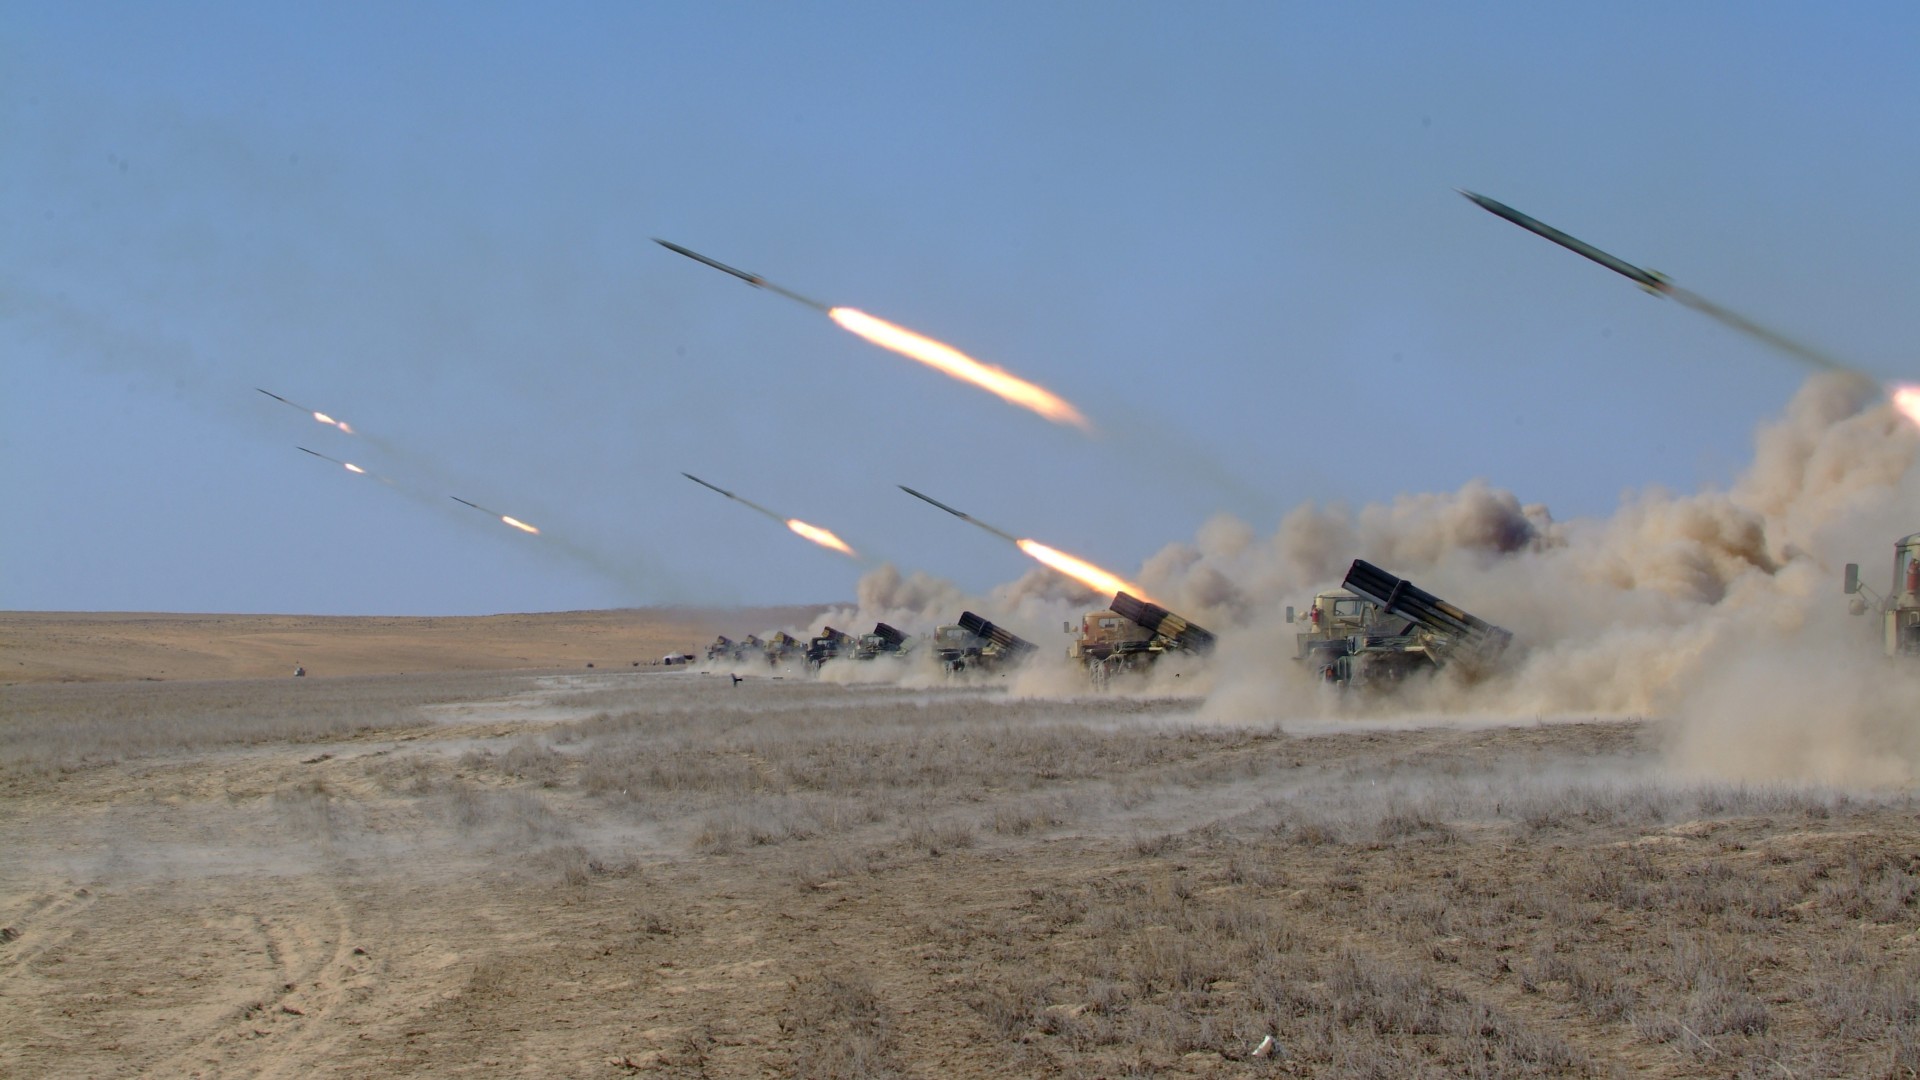 Naiza, MRL, multiple rocket launcher, artillery, Kazakhstan Armed Forces, desert, firing (horizontal)